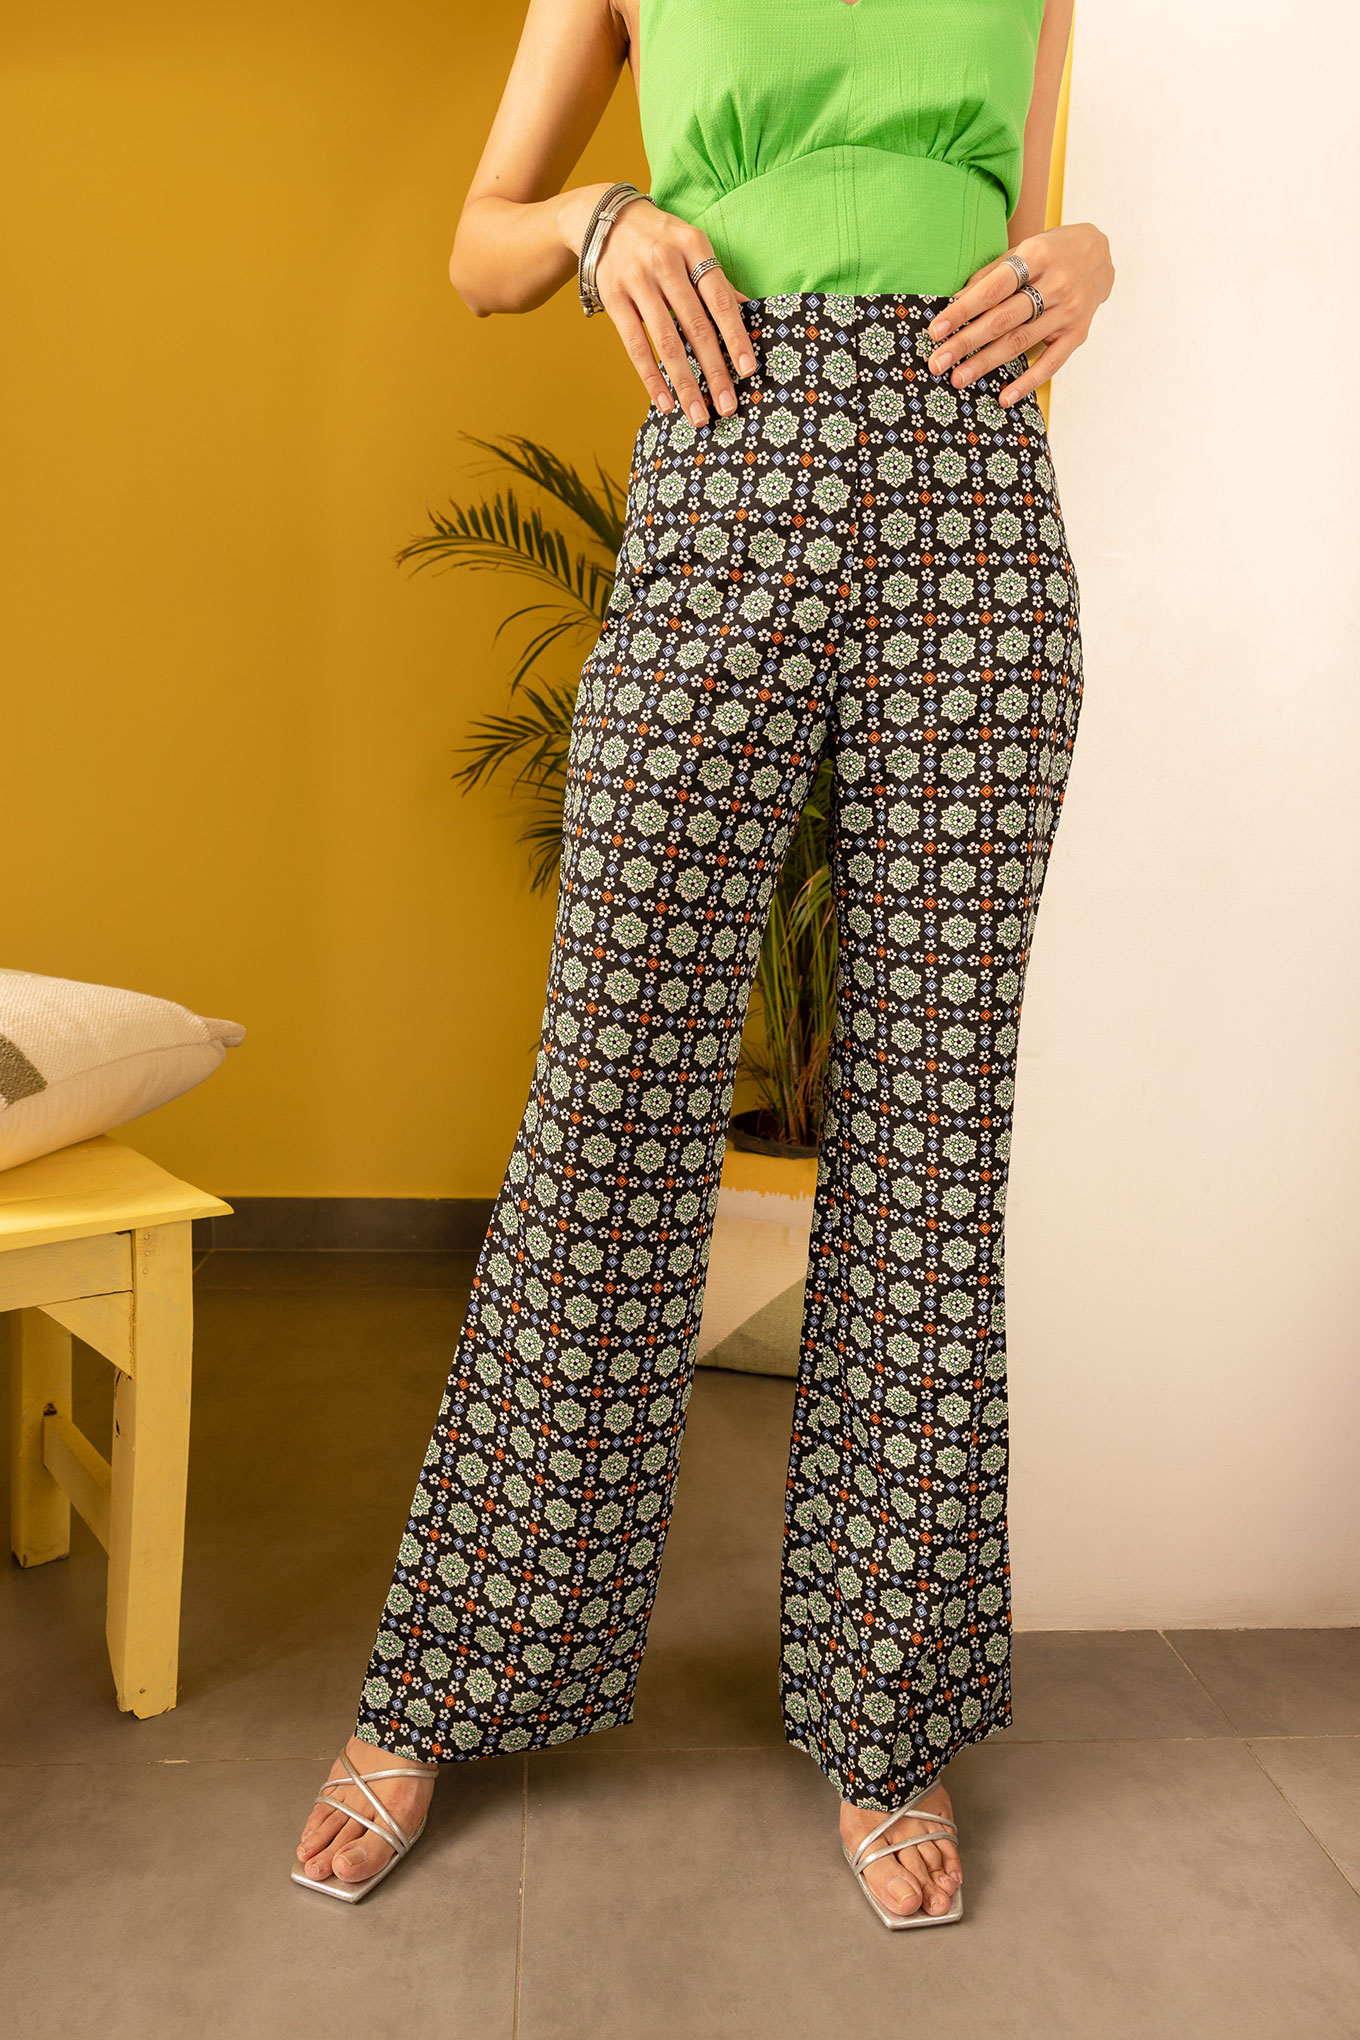 Preserve 127+ printed pants women best